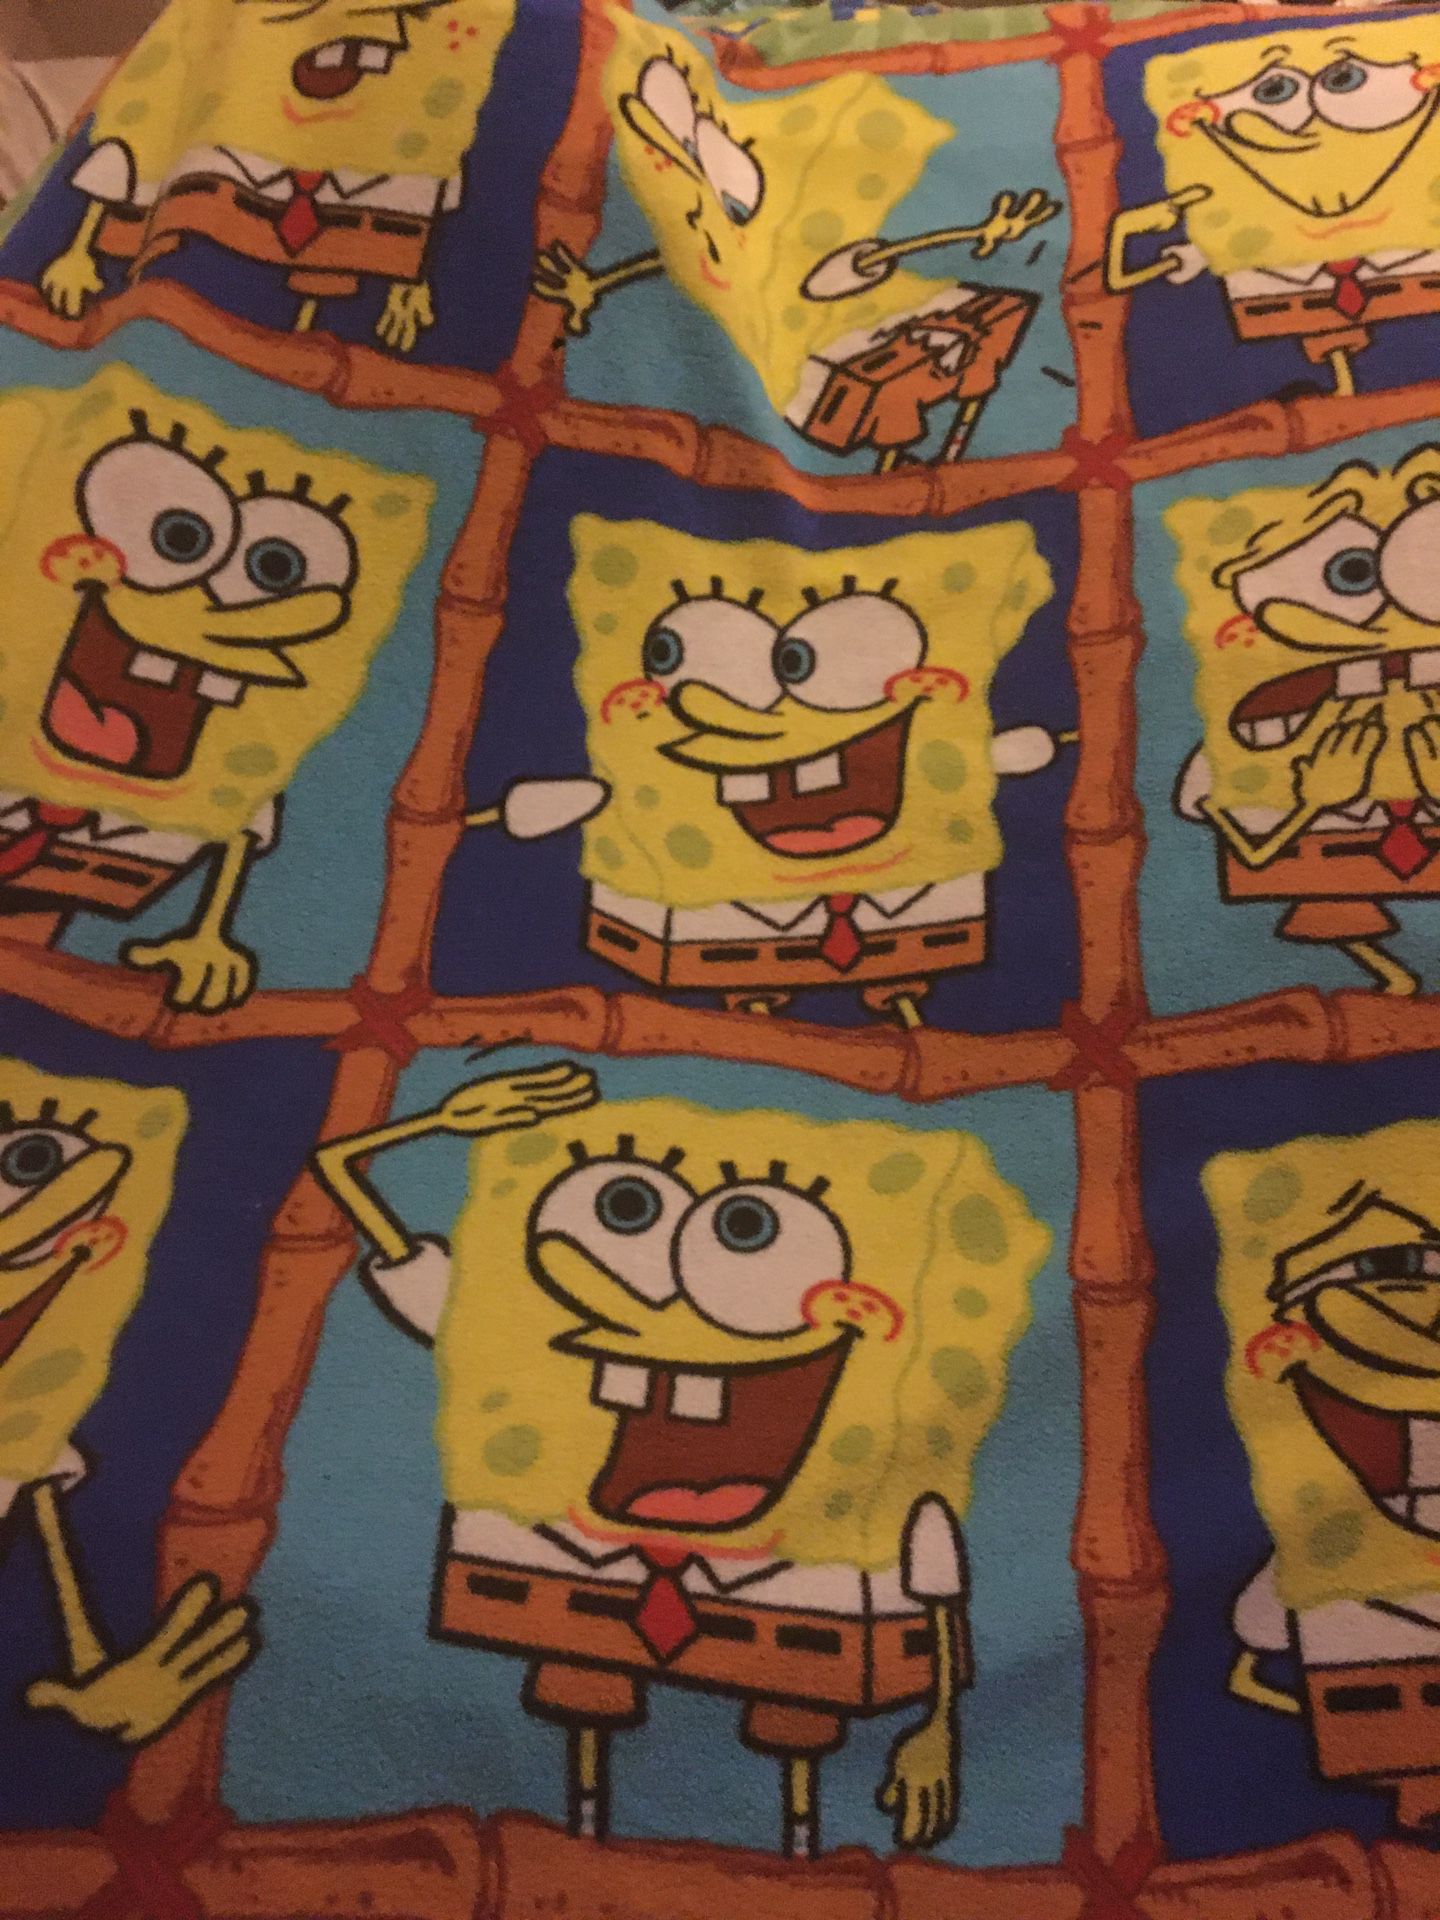 Spongebob blanket